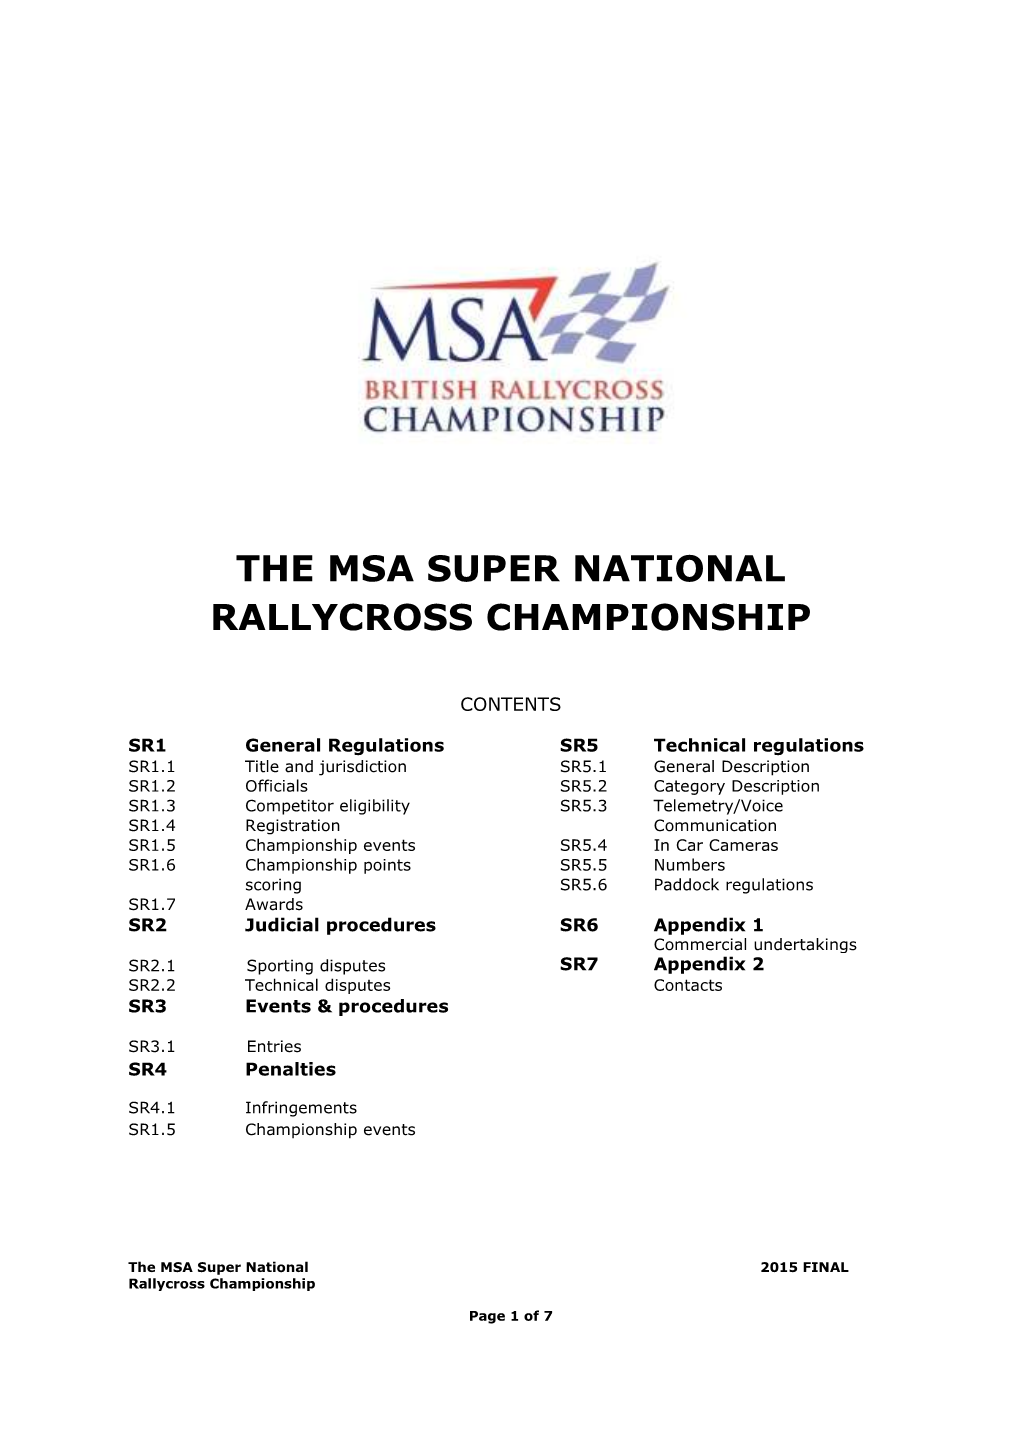 The Msa Super National Rallycross Championship